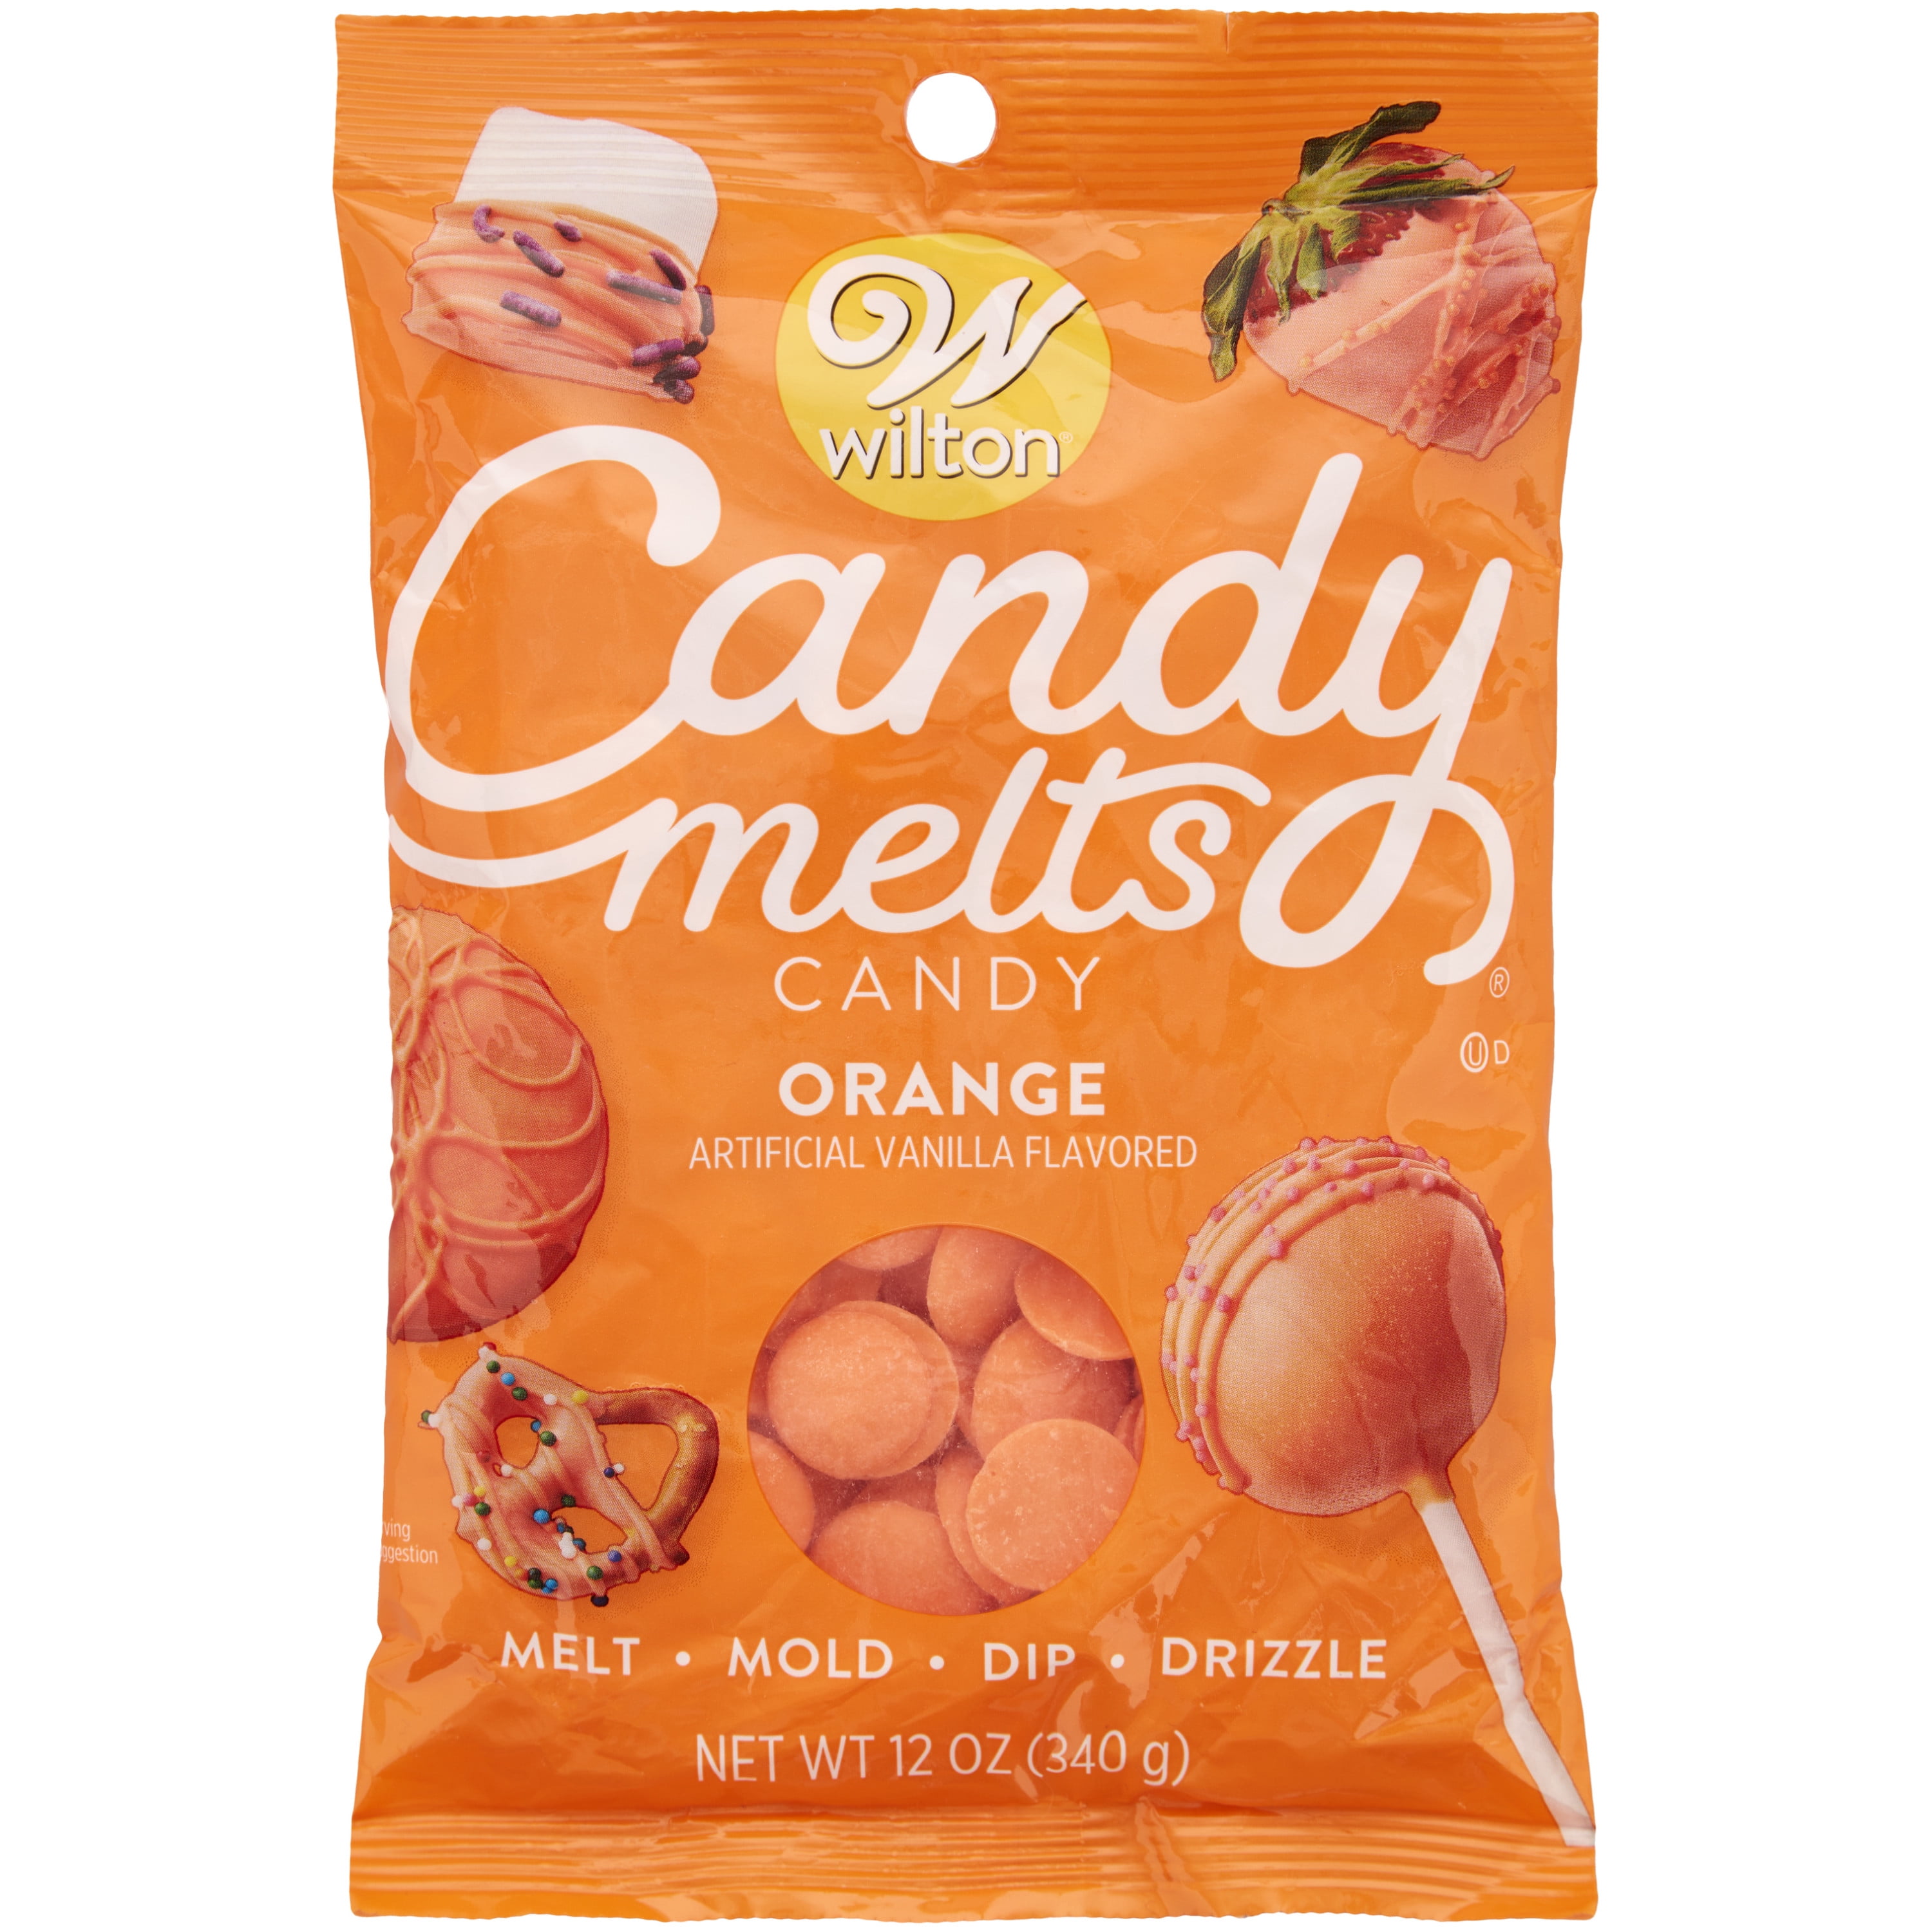 Wilton Orange Candy Melts Candy, 12 oz.